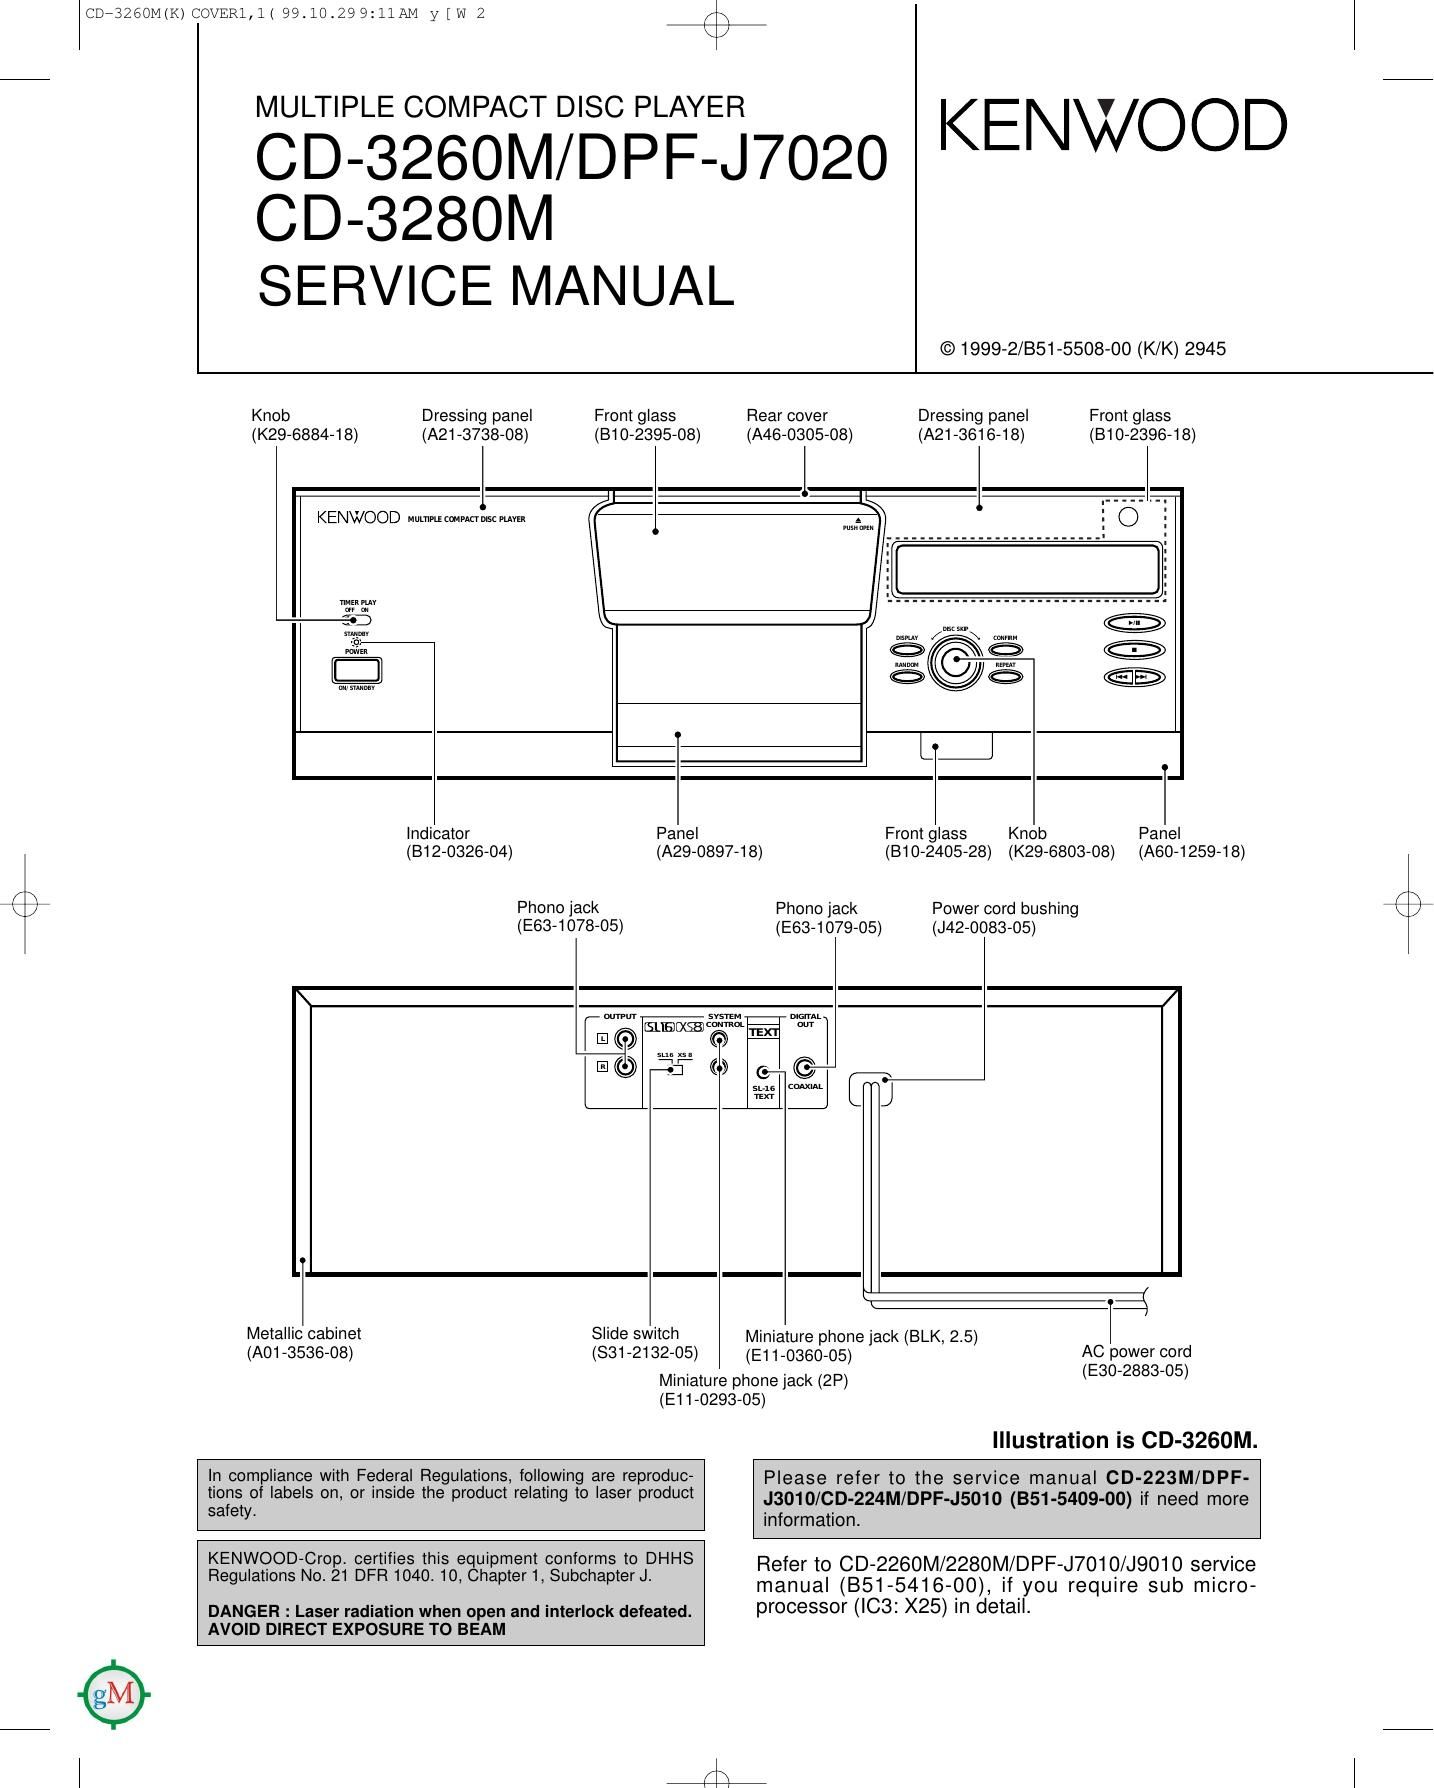 Kenwood CD 3260 M Service Manual